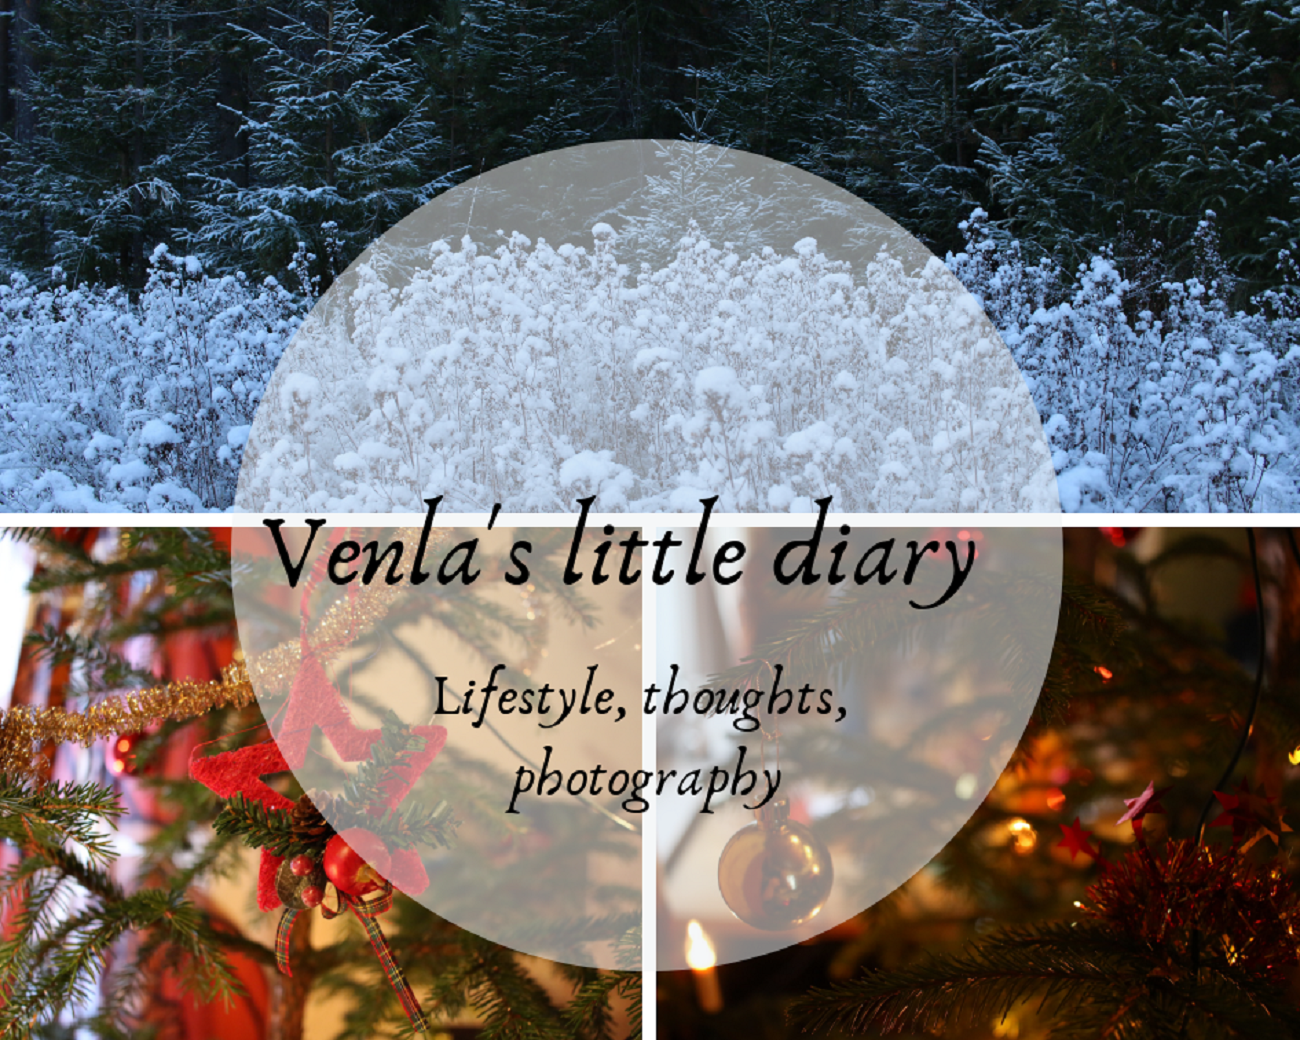 Venla's little diary